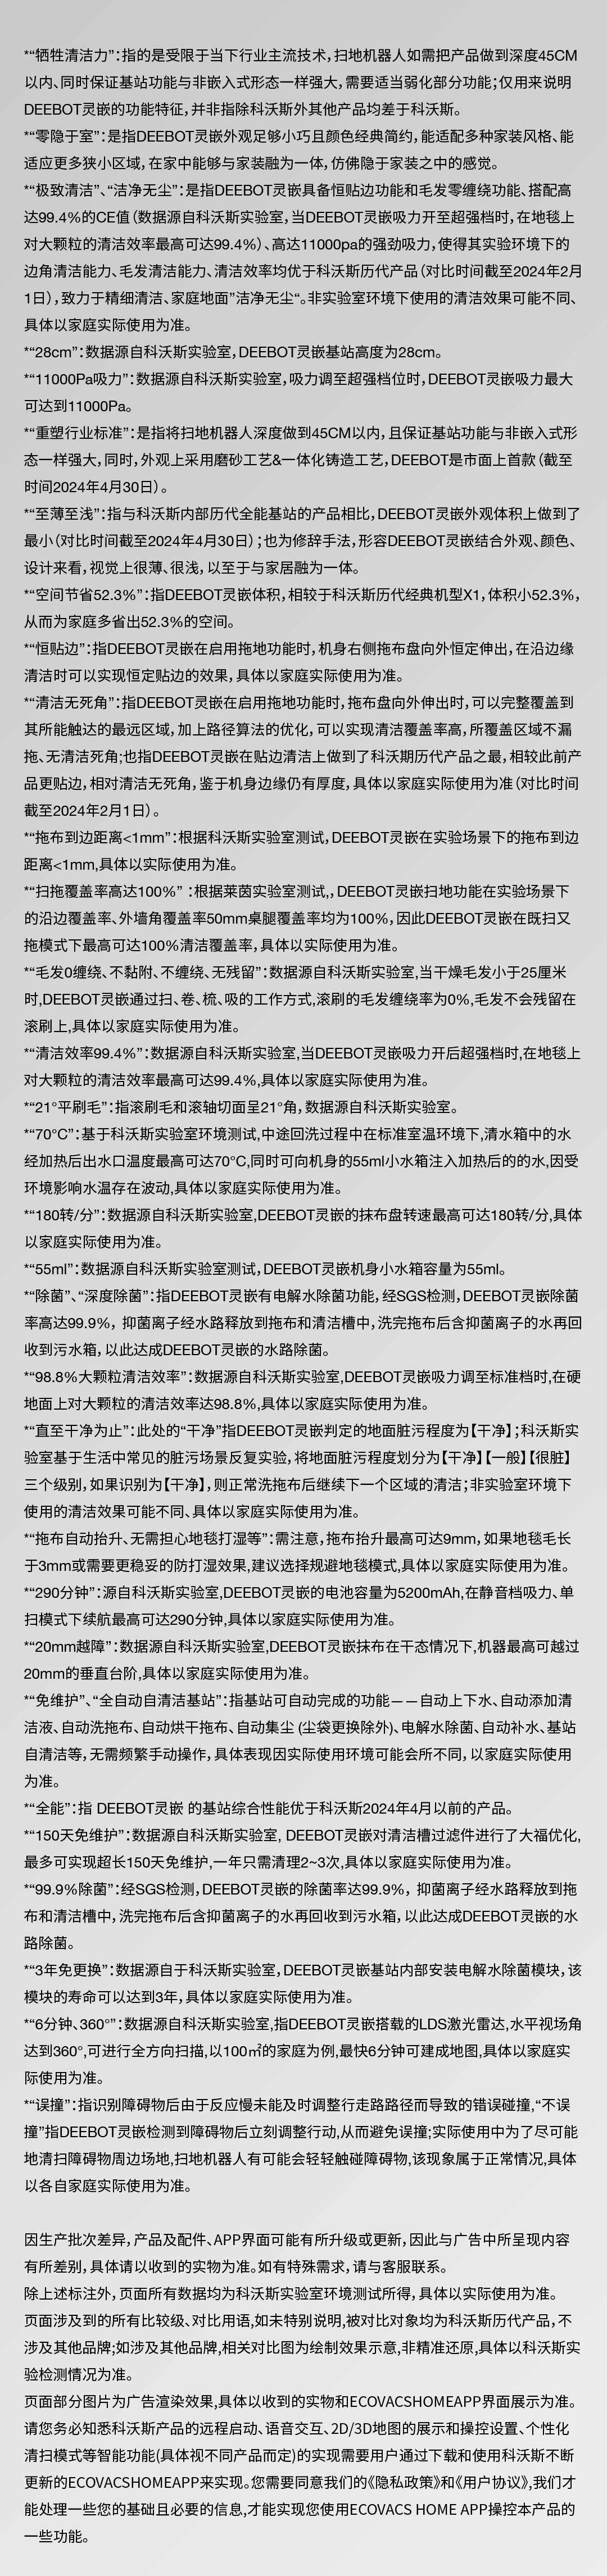 必发集团app下载装置(中国游)官方网站